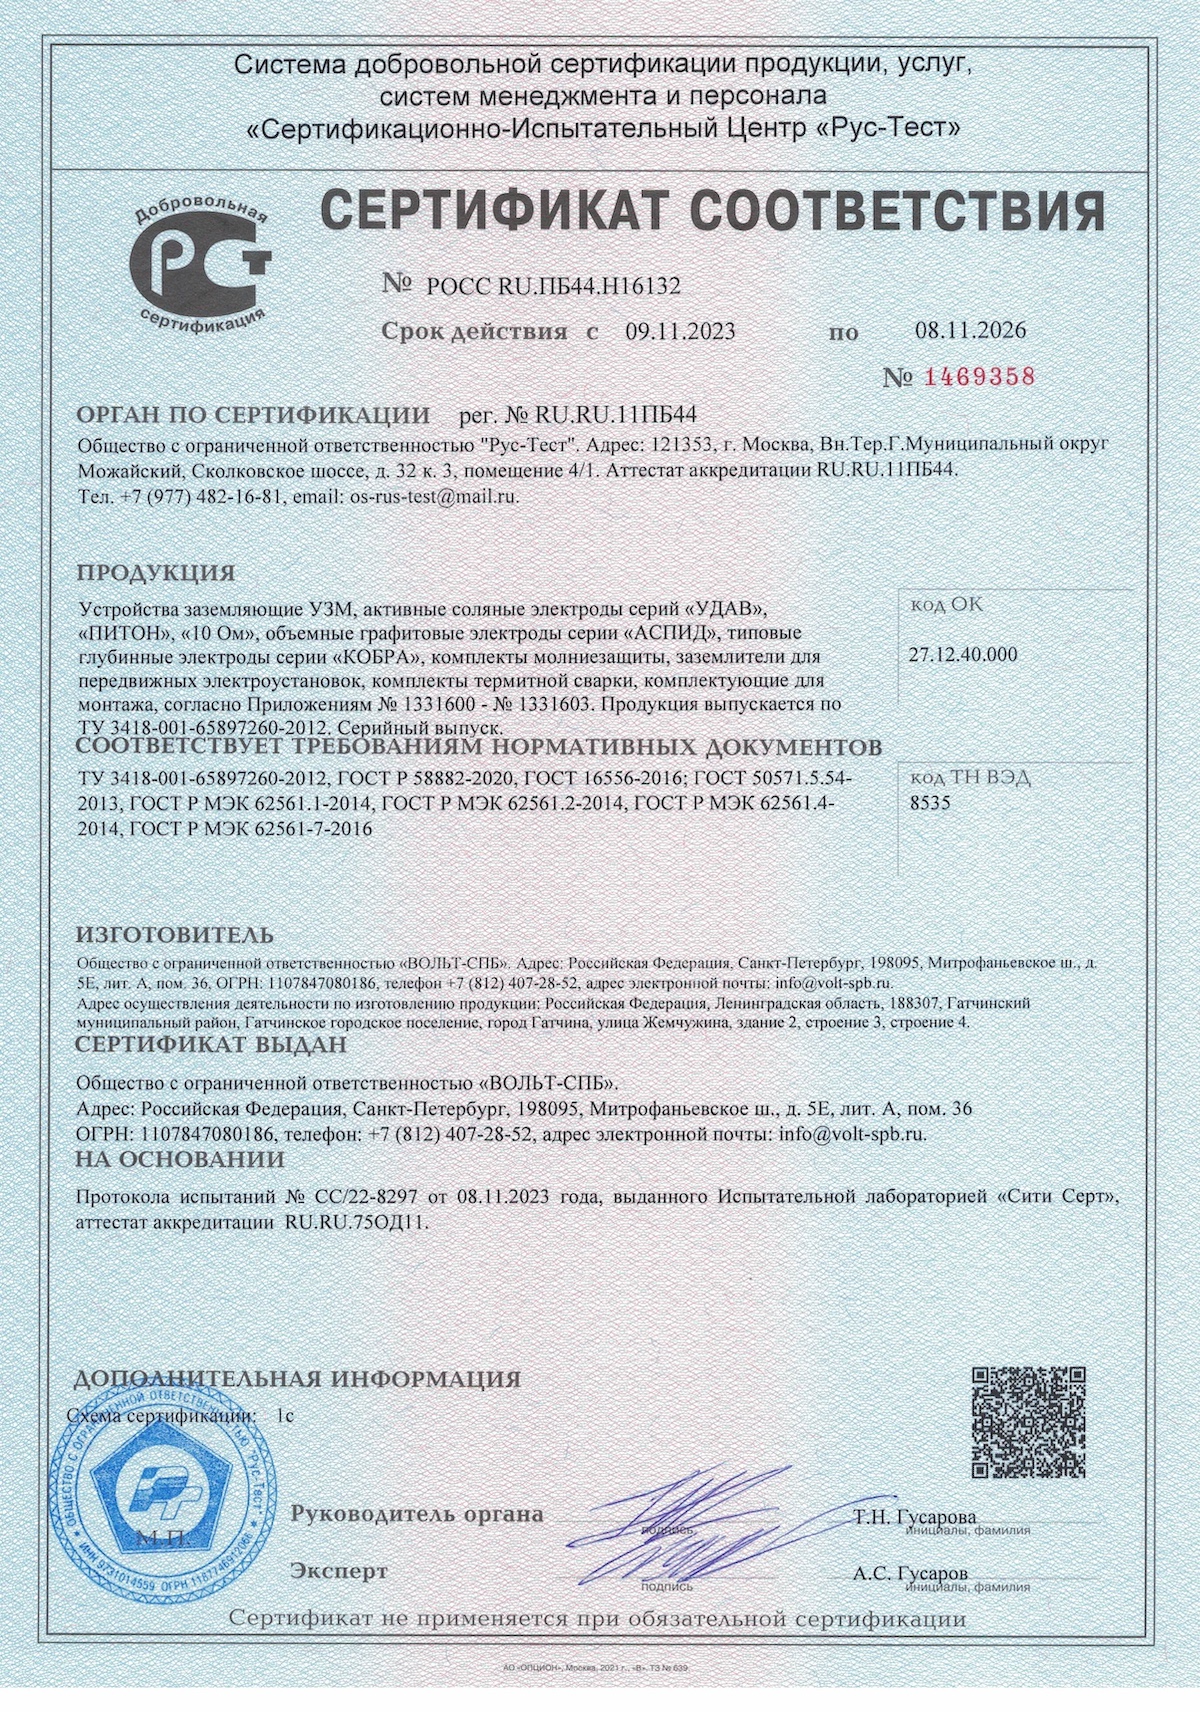 Сертификат соответствия на УЗМ, АСЭ, «КОБРУ» и «АСПИД»